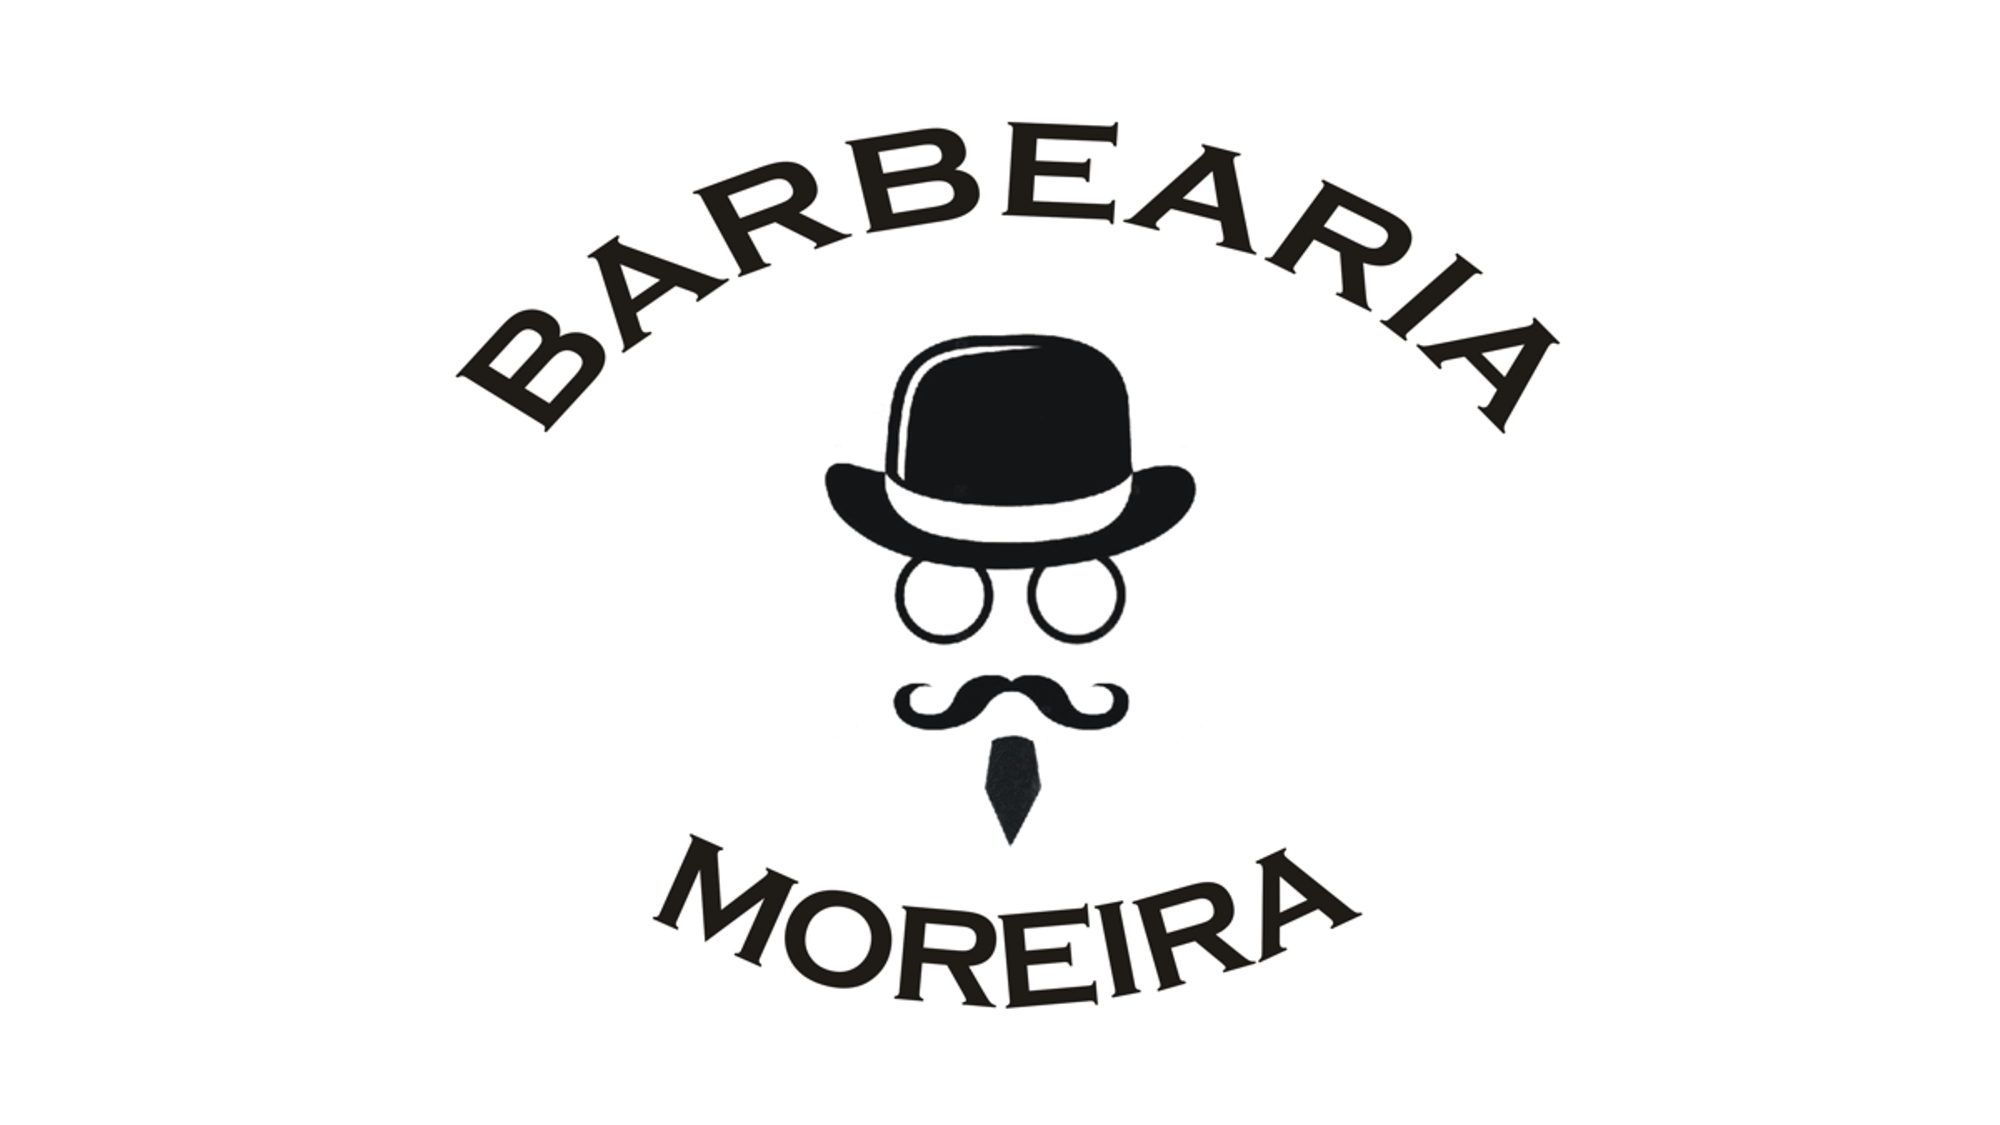 Barbearia Moreira